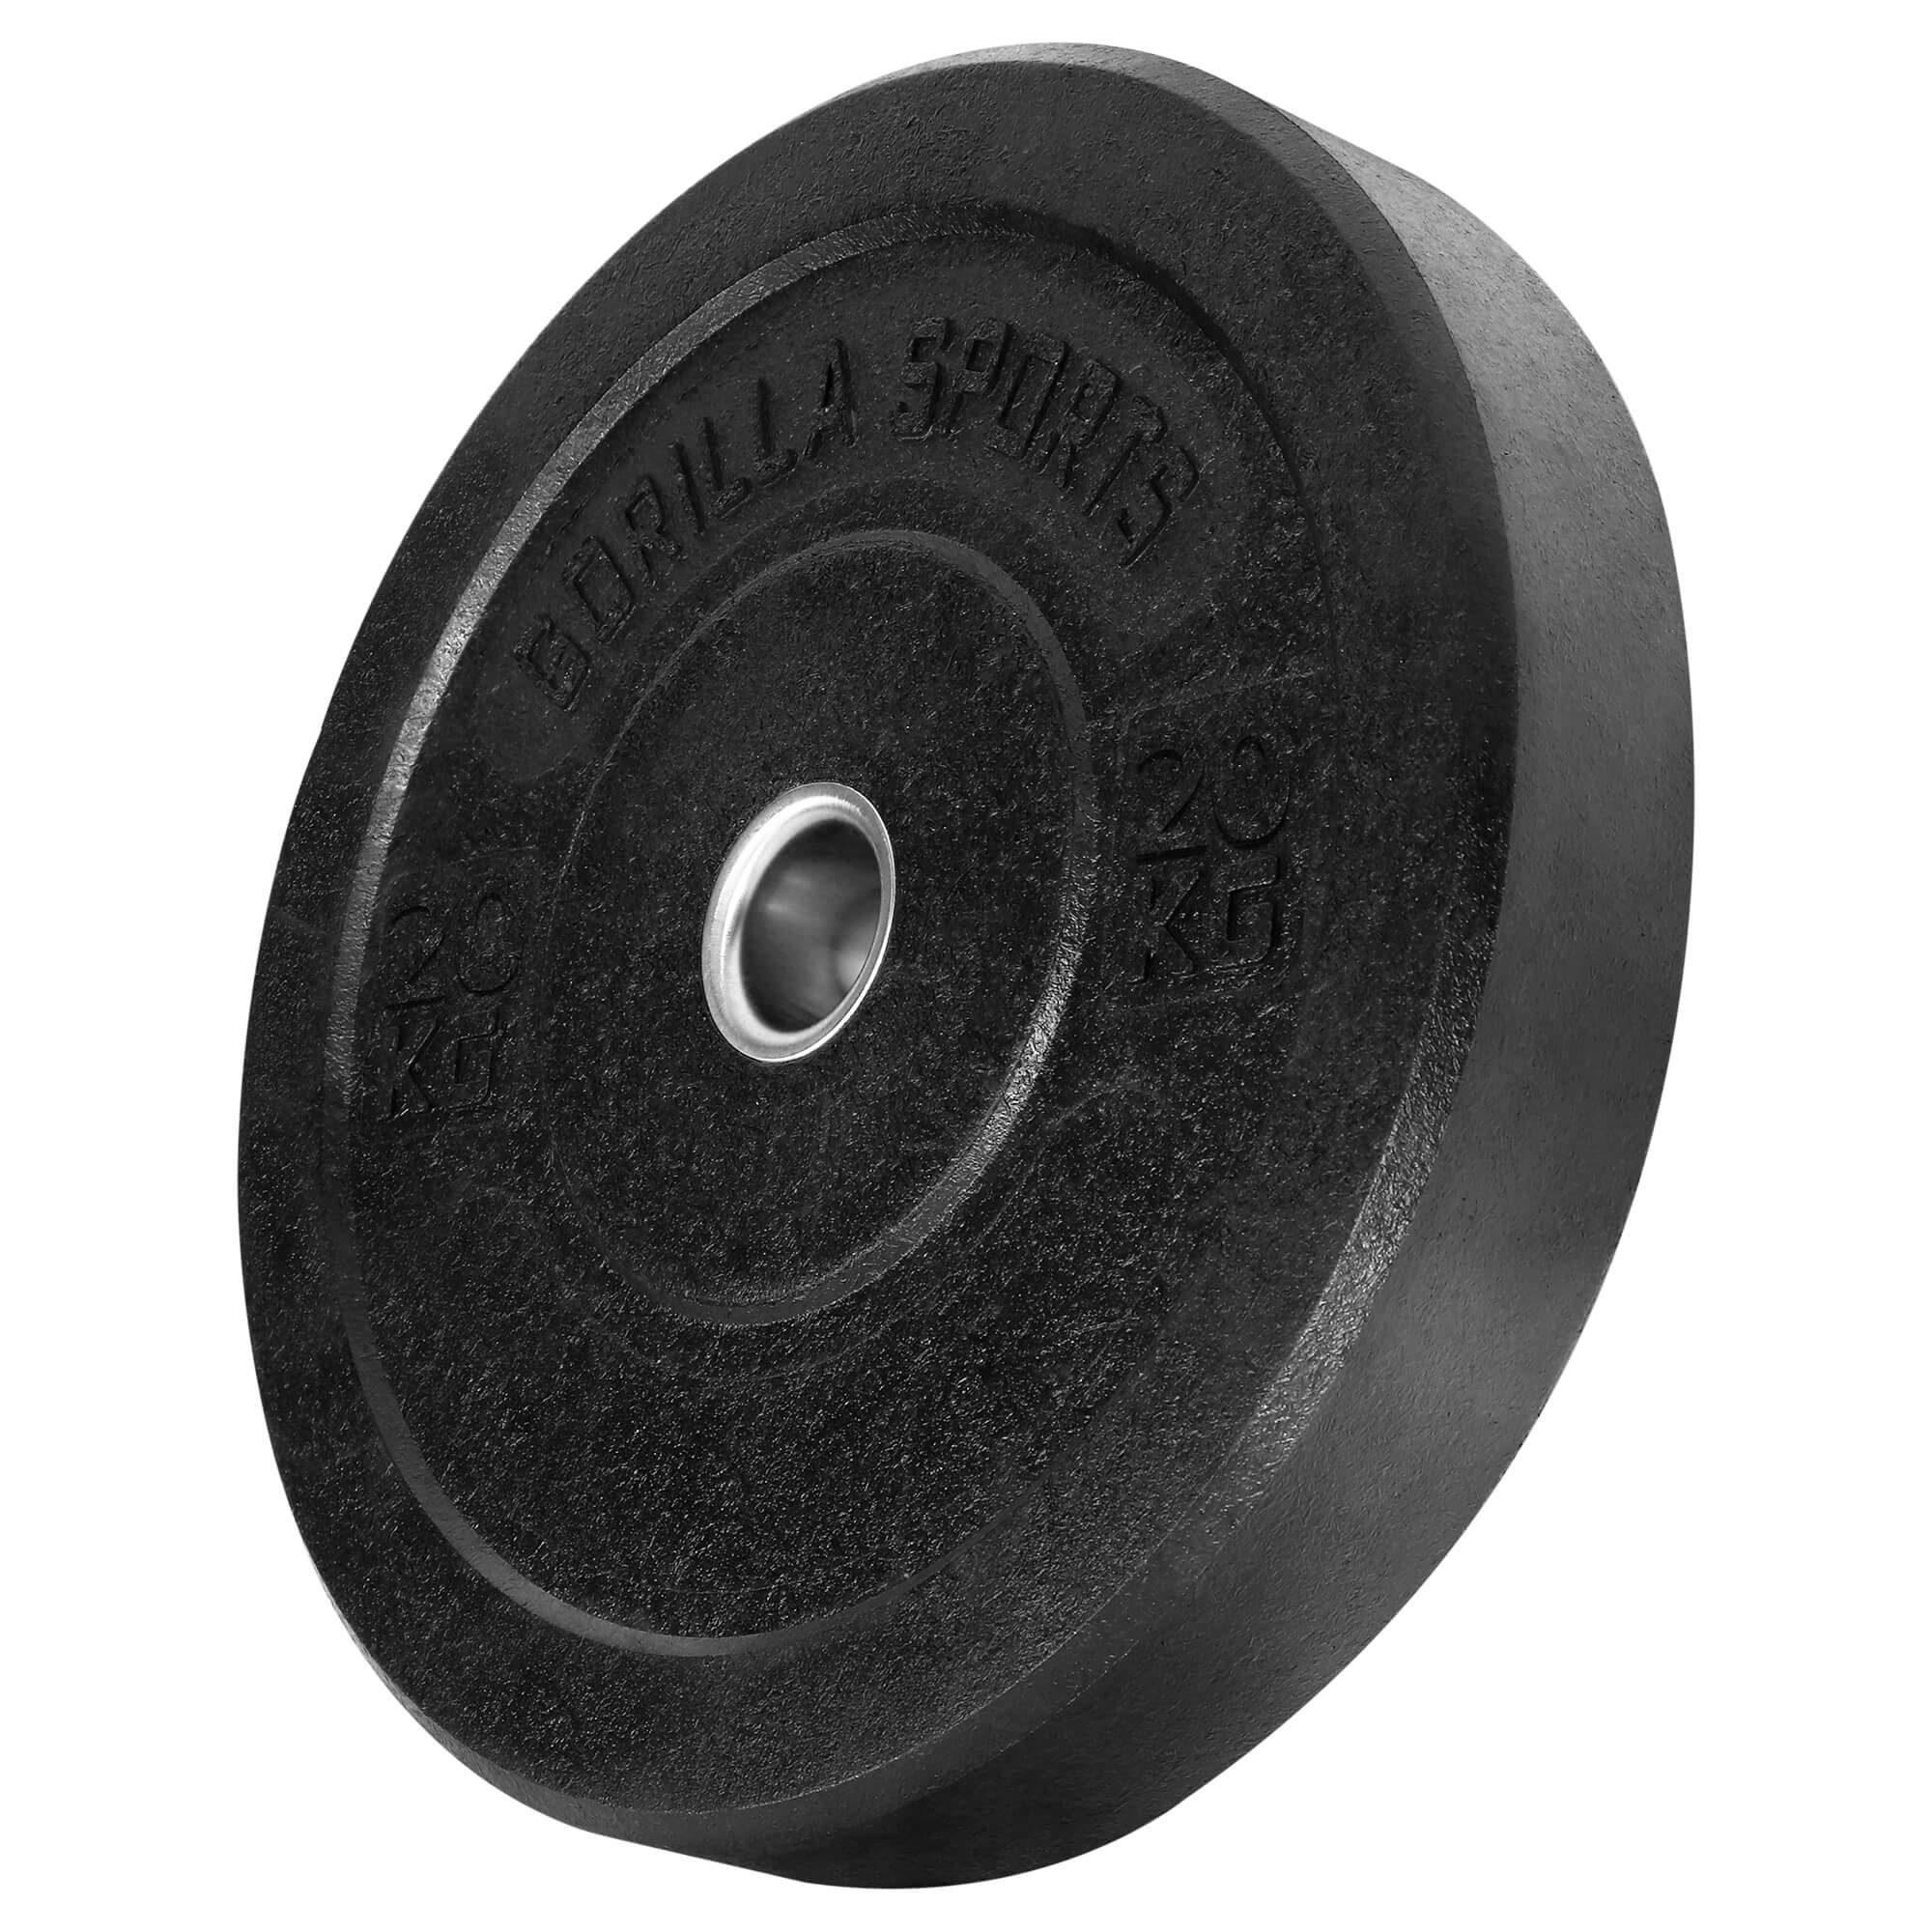 GORILLA SPORTS Hantelscheiben Olympia,5-50kg Gewichte,Einzeln/Set,Bumper Plates,Gewichtsscheiben 20kg